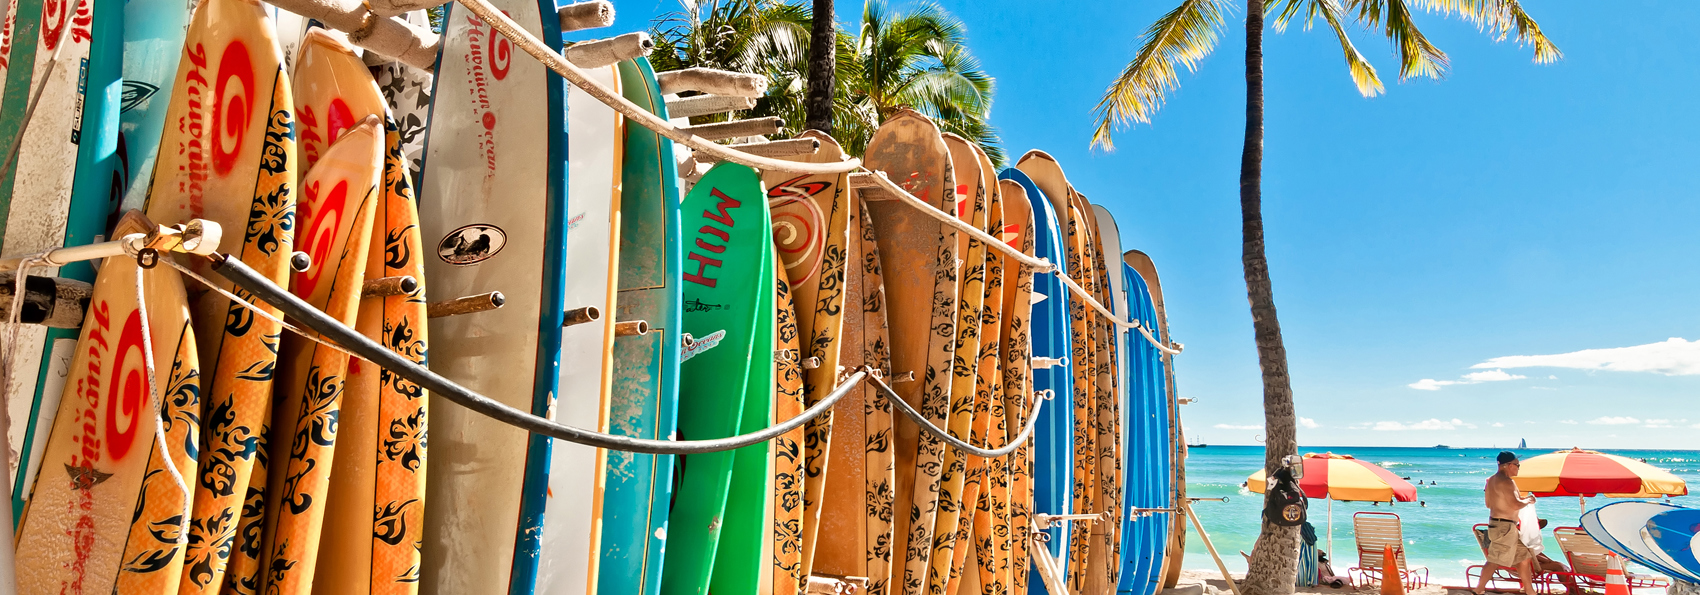 hawaii_honolulu_waikiki beach_surfboards_01